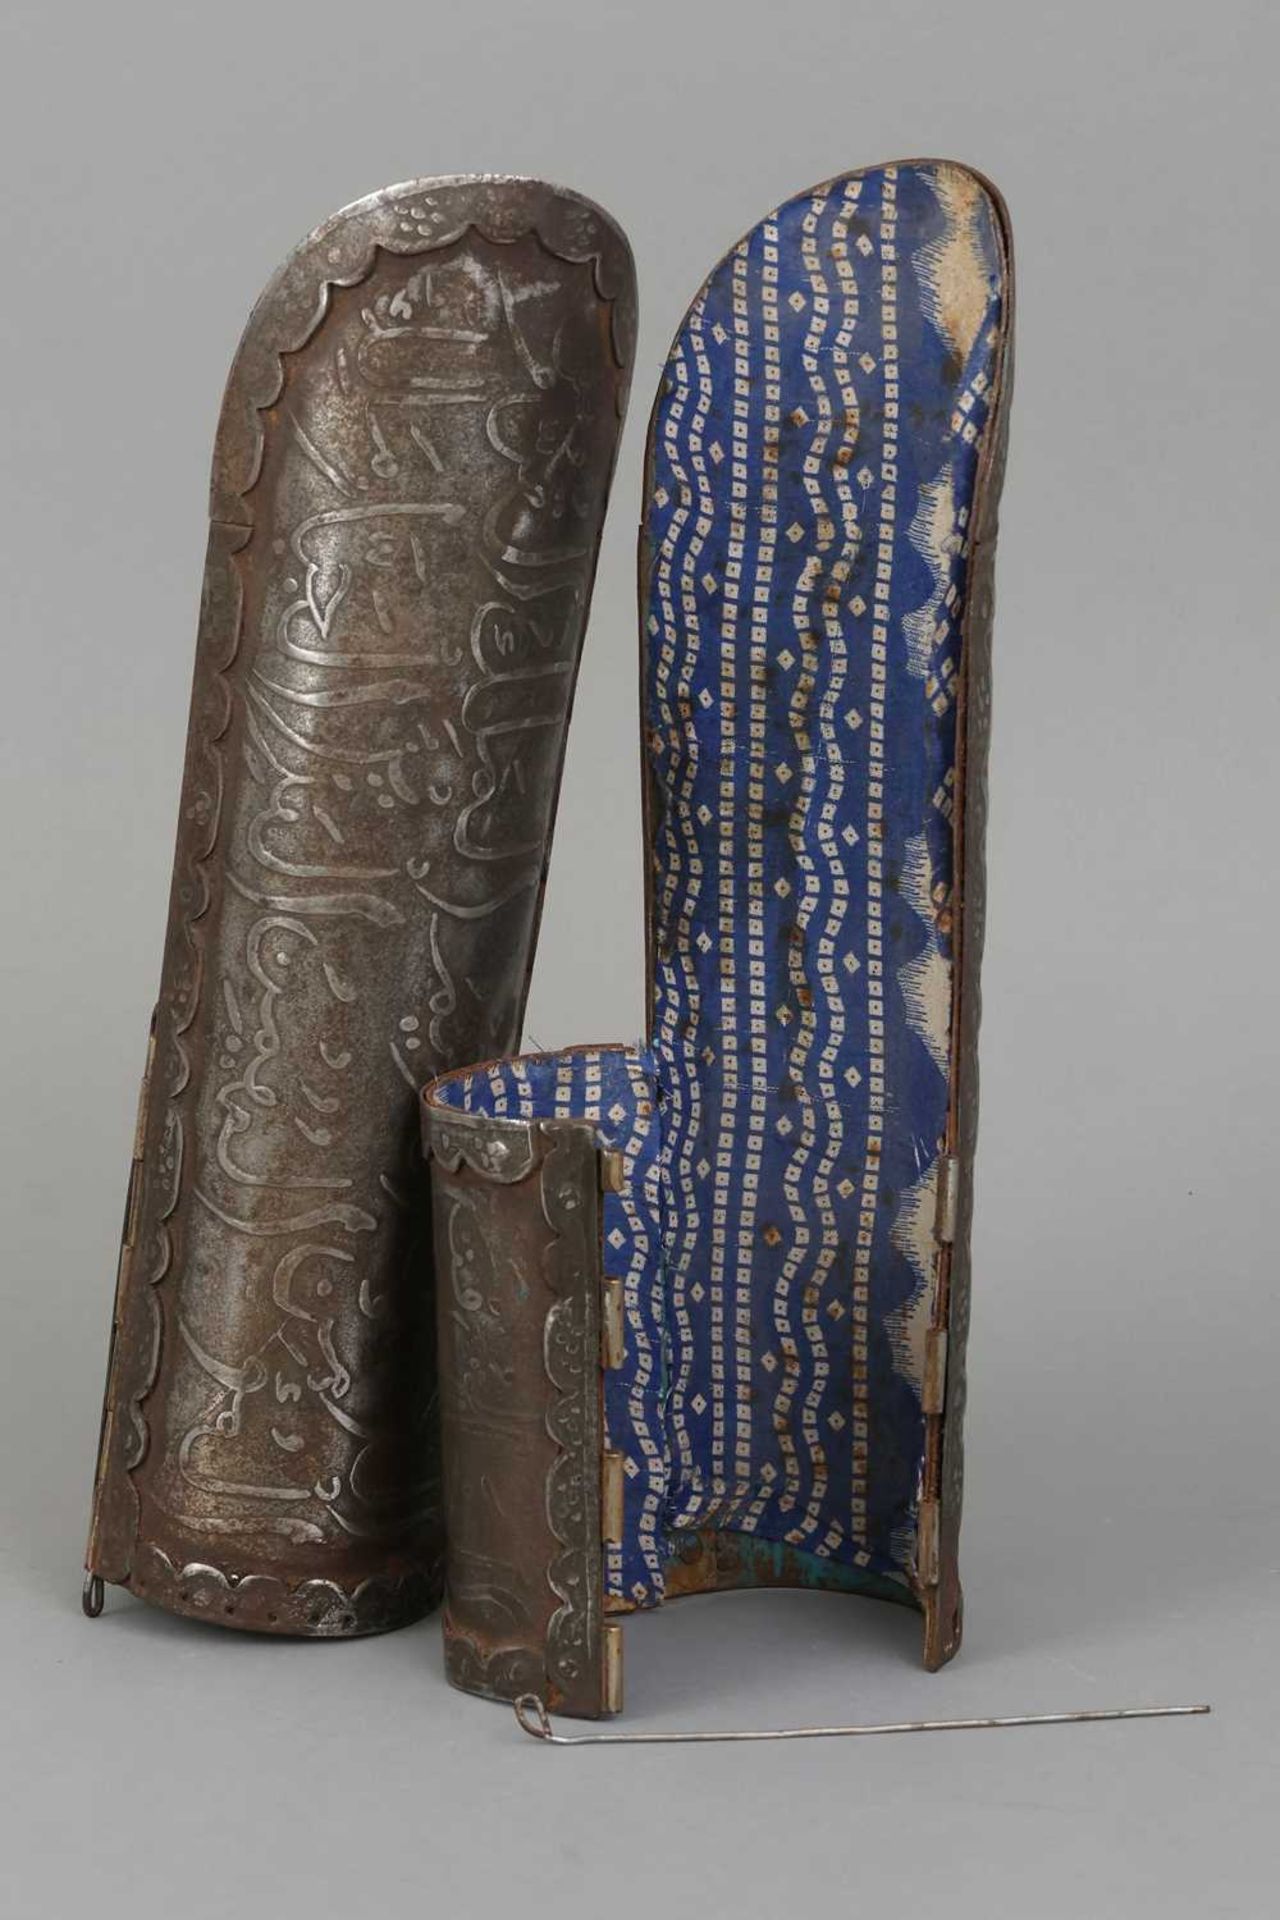 Paar indo-persische Armschienen (Bazuband) - Image 3 of 3